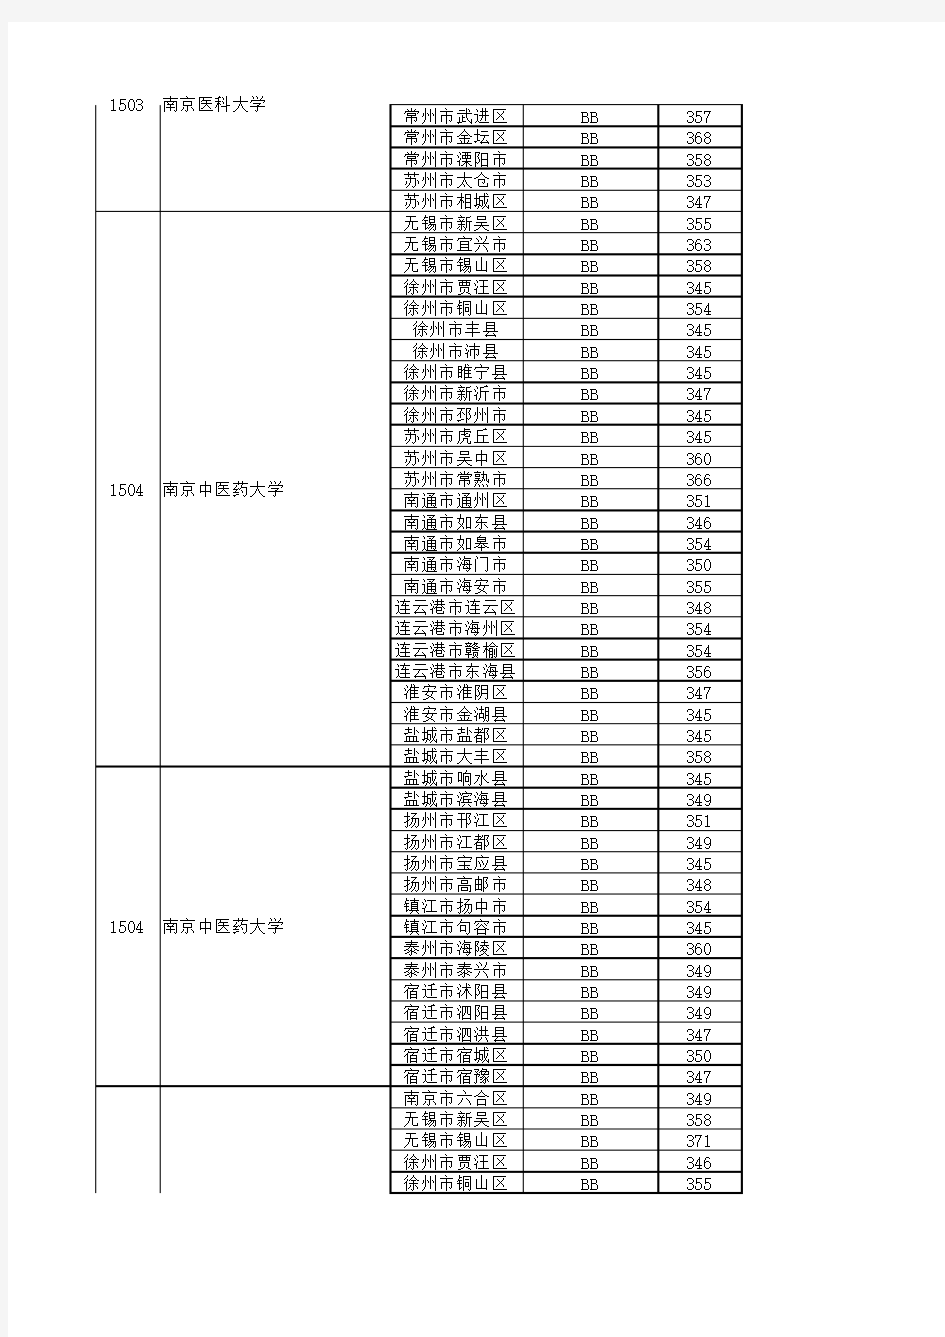 2019年江苏高考一本高校录取分数线(理科文科)